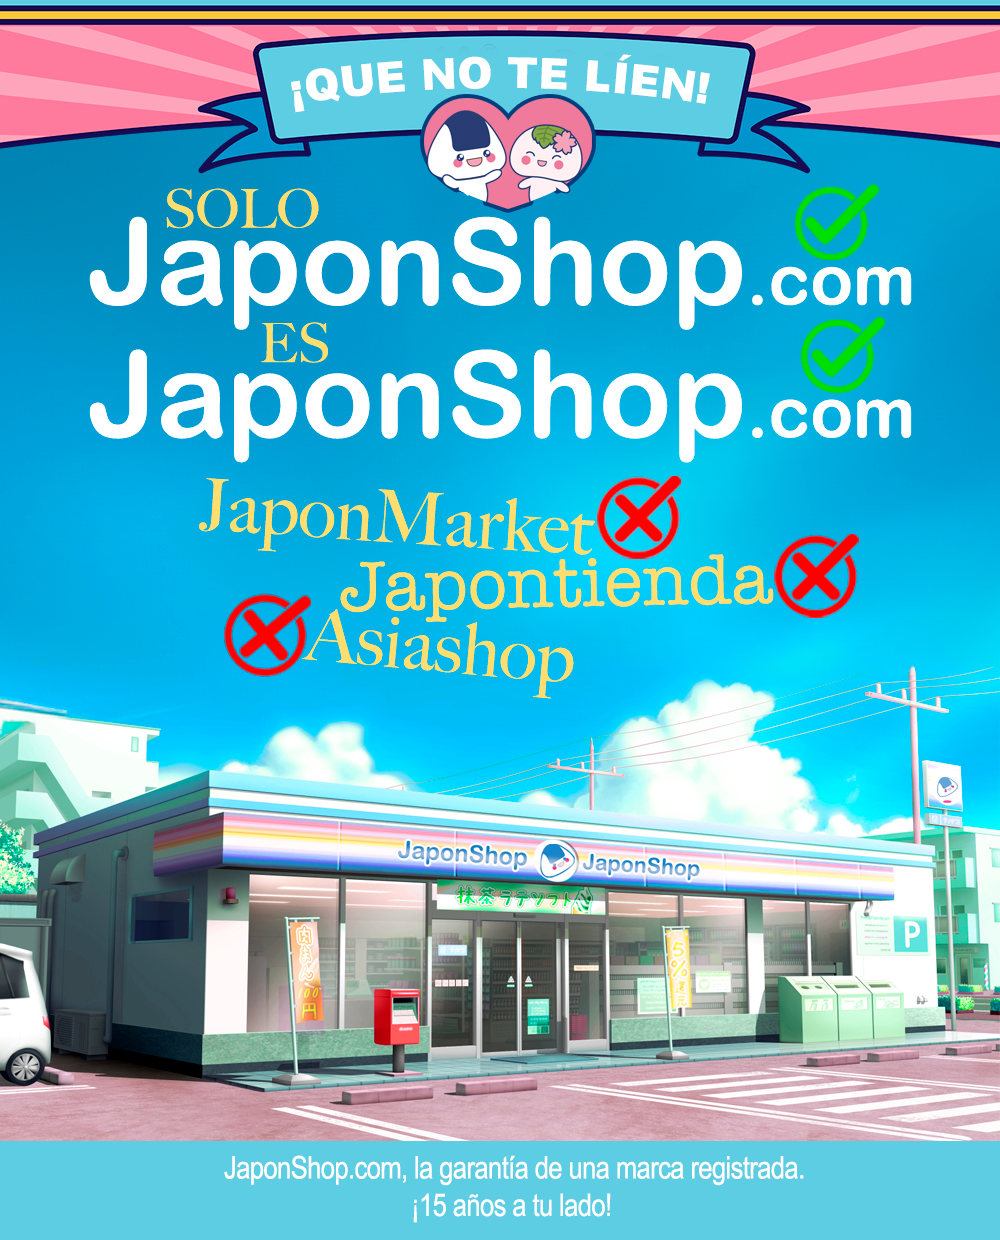 ¡QUE NO TE LIEN! 🚫 ¡Solo JaponShop es JAPONSHOP!